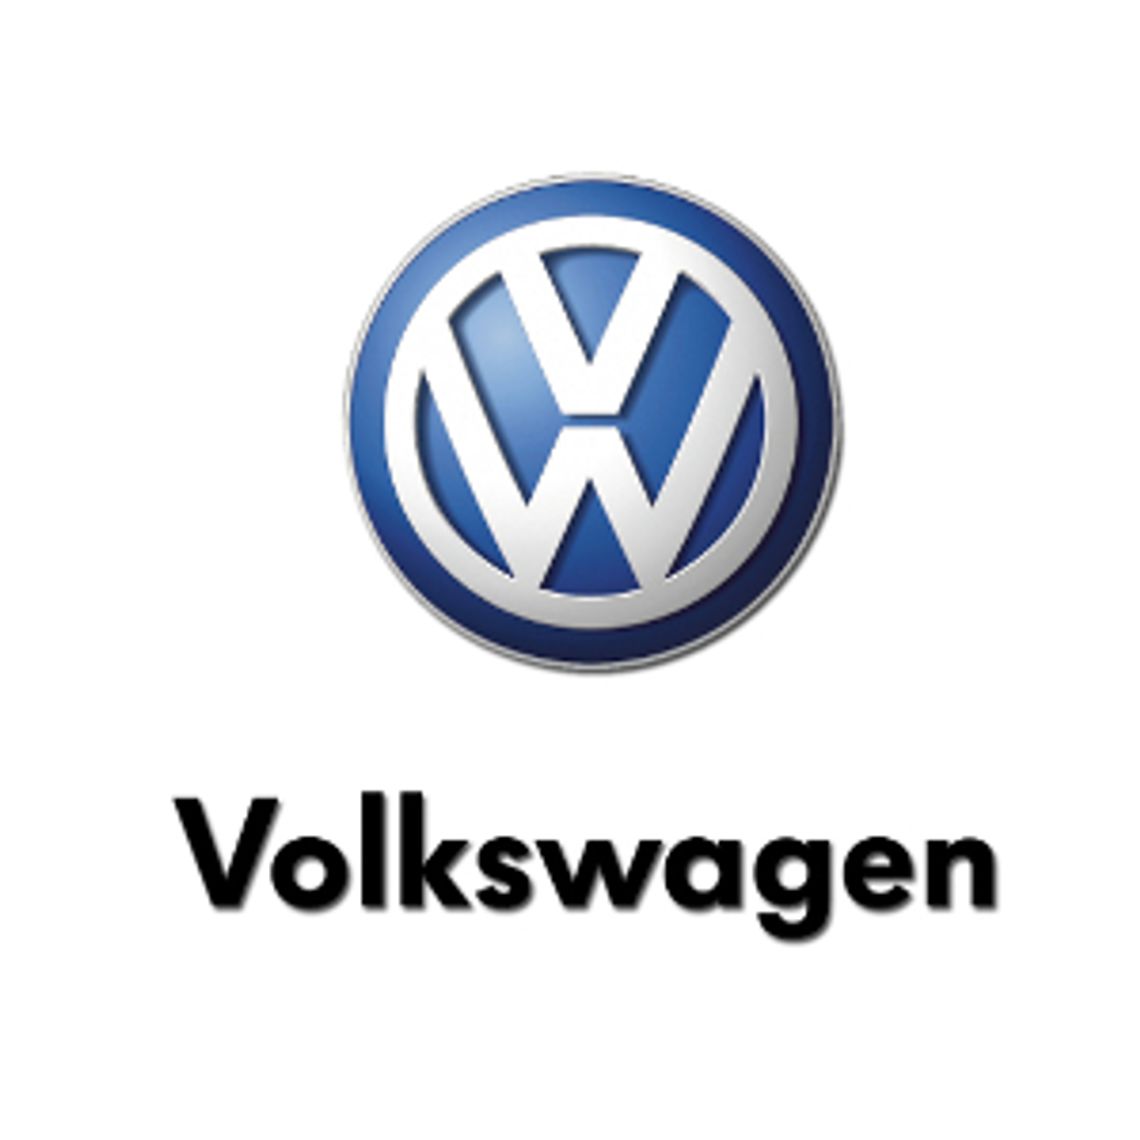 Akcesoria VW - VW-Sklep